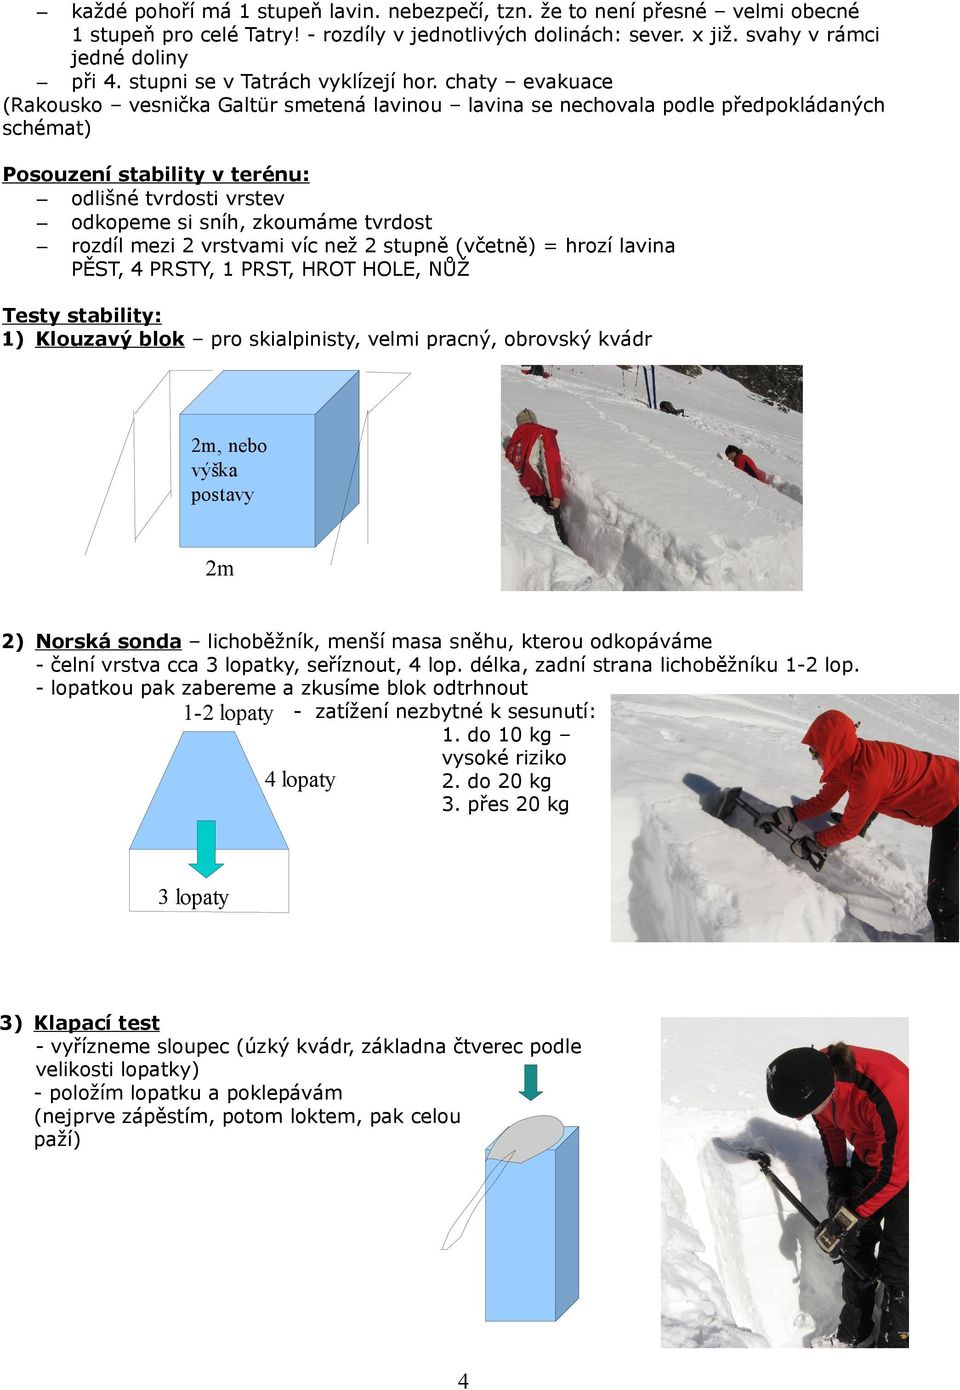 chaty evakuace (Rakousko vesnička Galtür smetená lavinou lavina se nechovala podle předpokládaných schémat) Posouzení stability v terénu: odlišné tvrdosti vrstev odkopeme si sníh, zkoumáme tvrdost